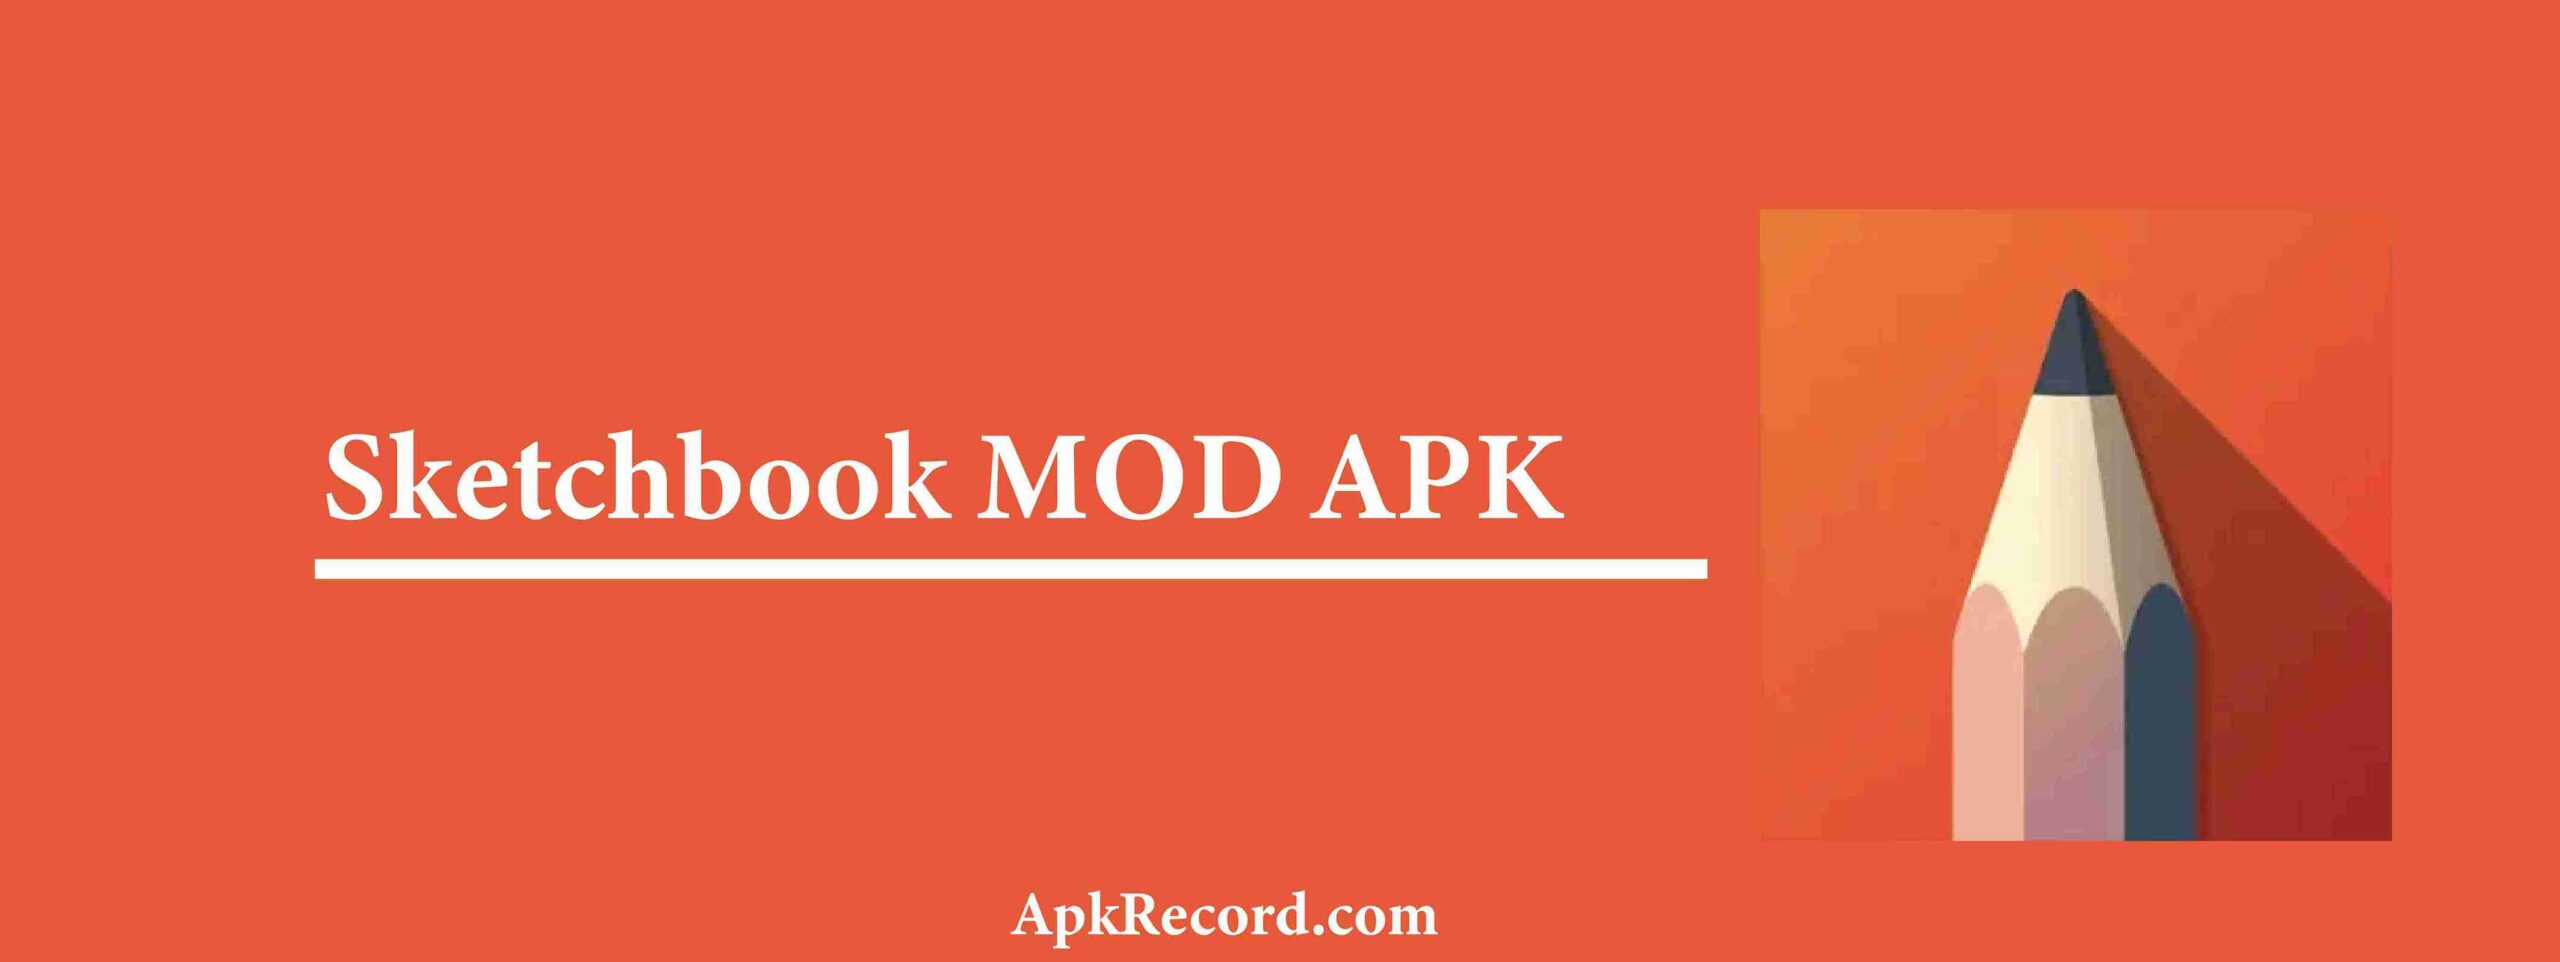 Sketchbook MOD APK V6.0.6